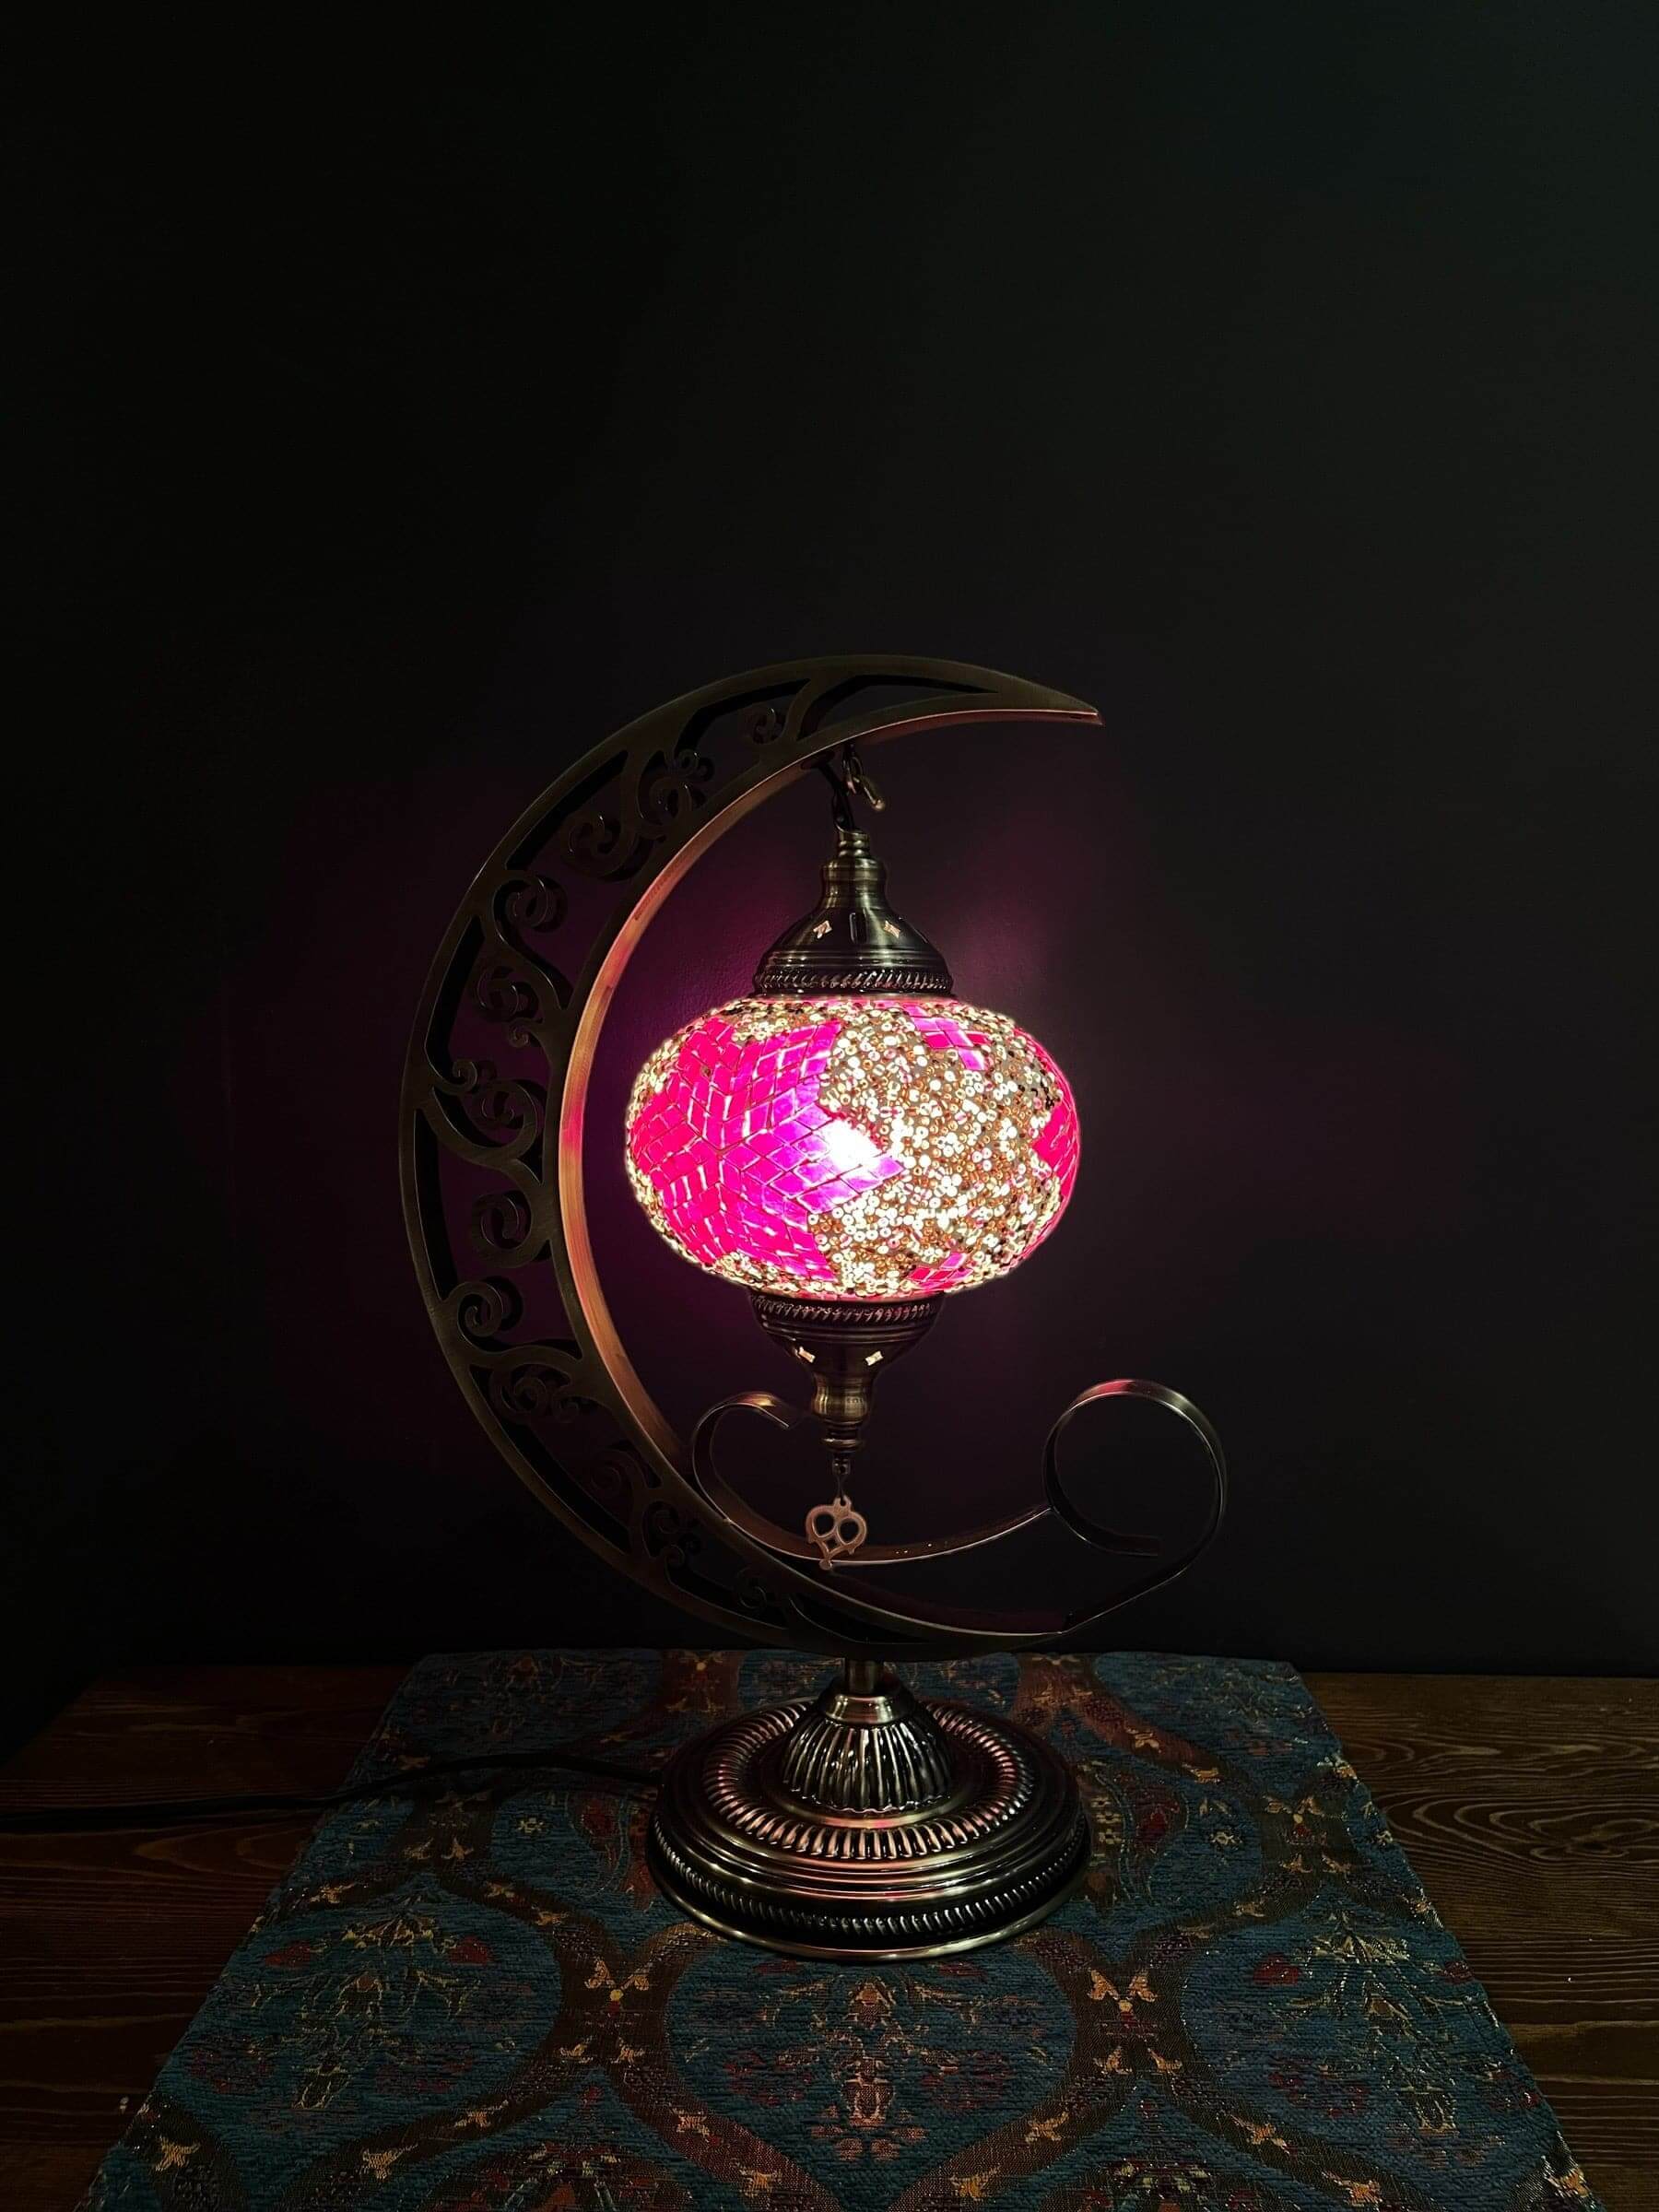 Mosaic Moon Lamp (Turkish Lamps) Purple-Pink$175.00Bazaar G Rugs N Gifts